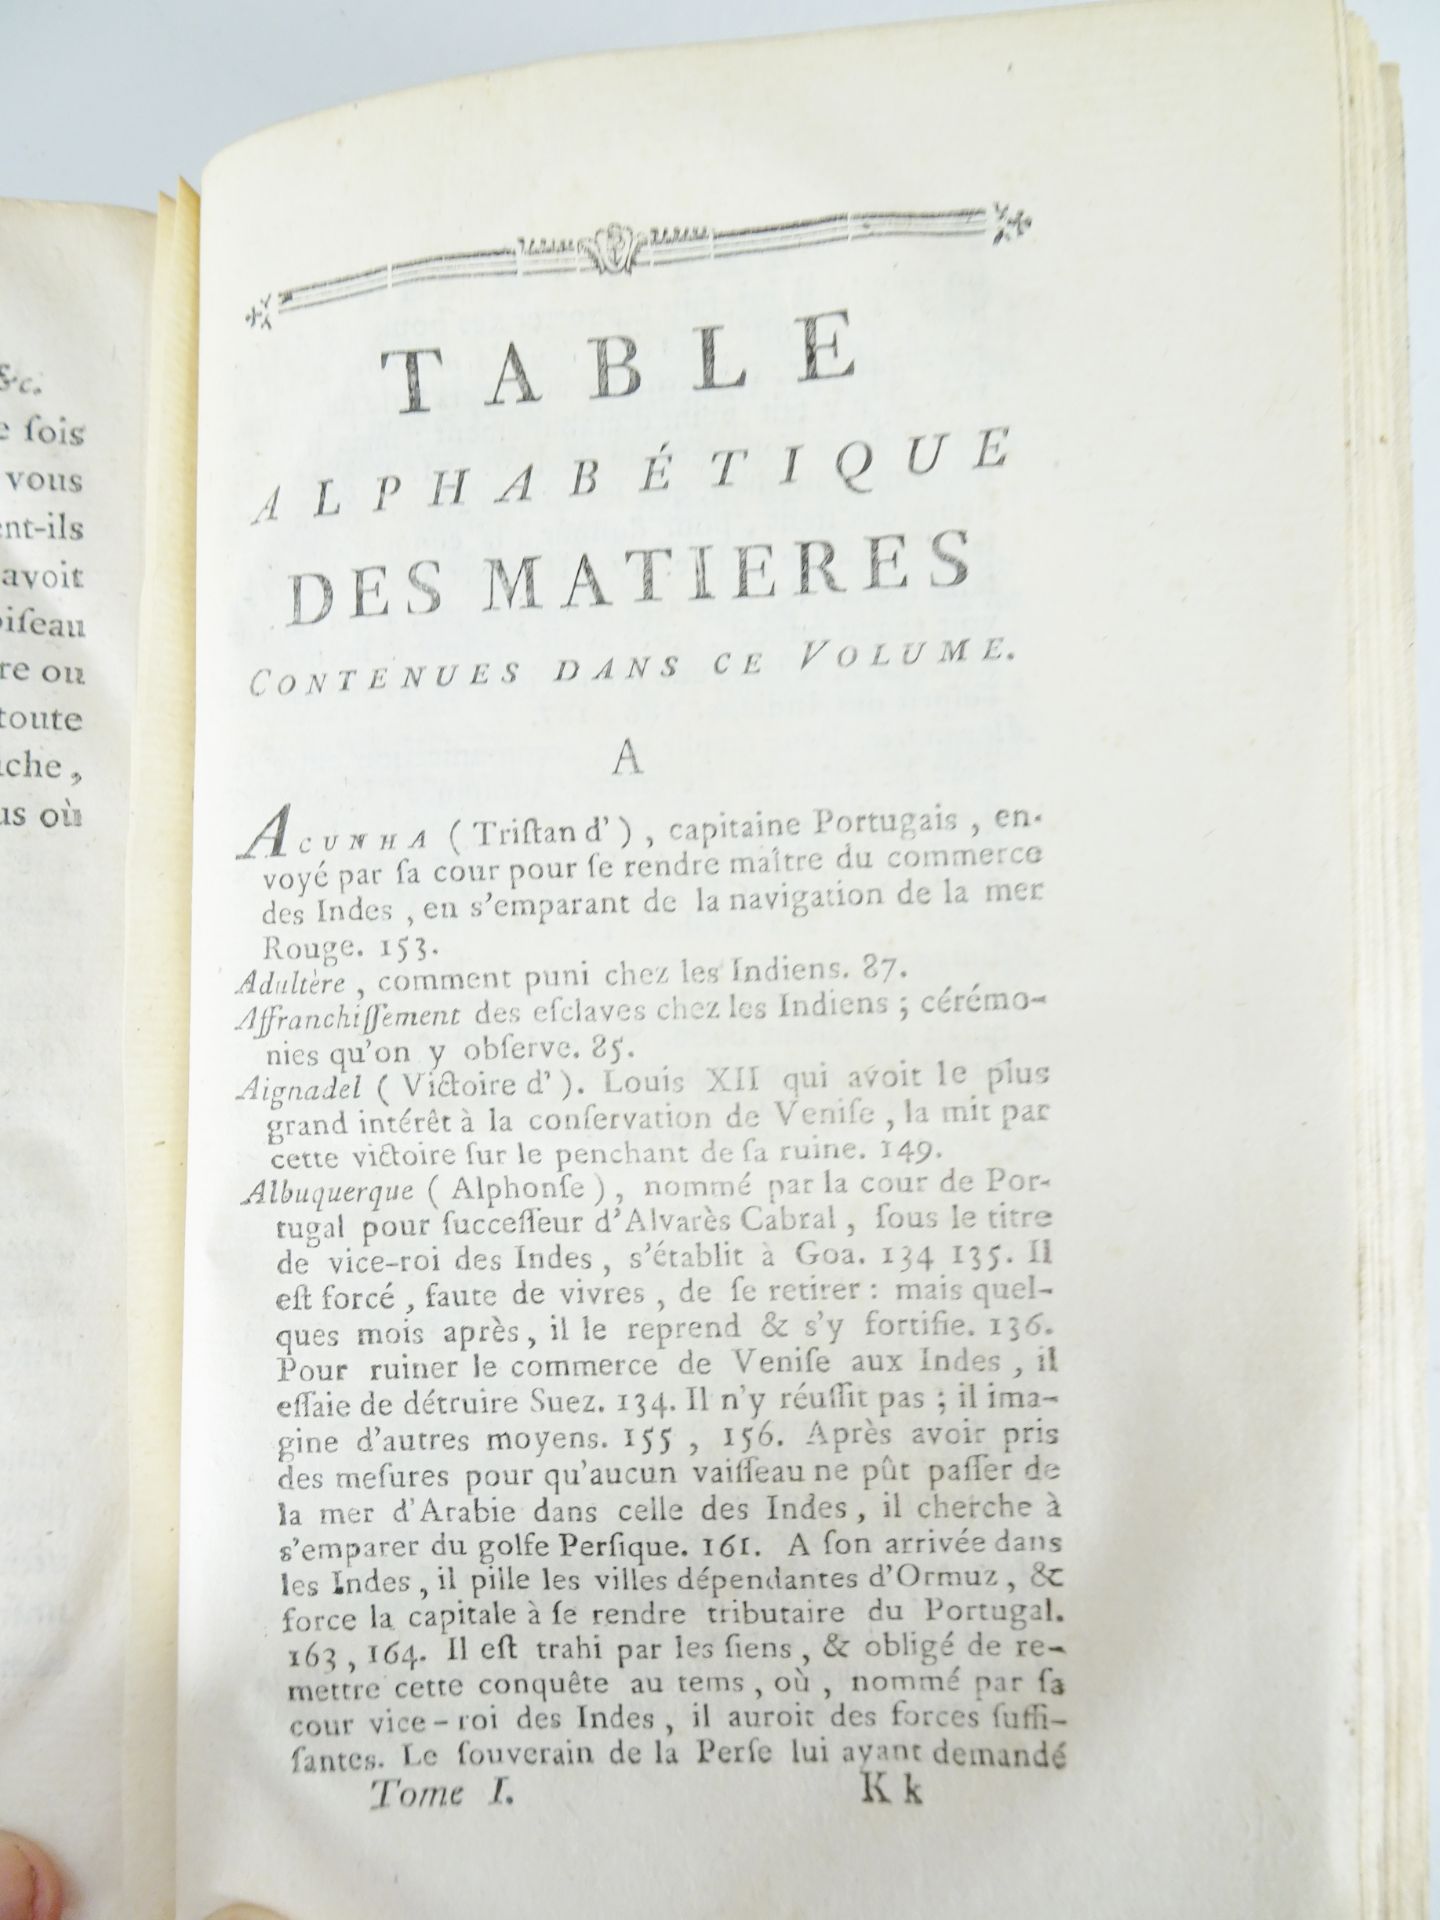 |Histoire| Raynal Guillaume Thomas, "Histoire Philosophique et Politique…", 1780 - Image 6 of 6